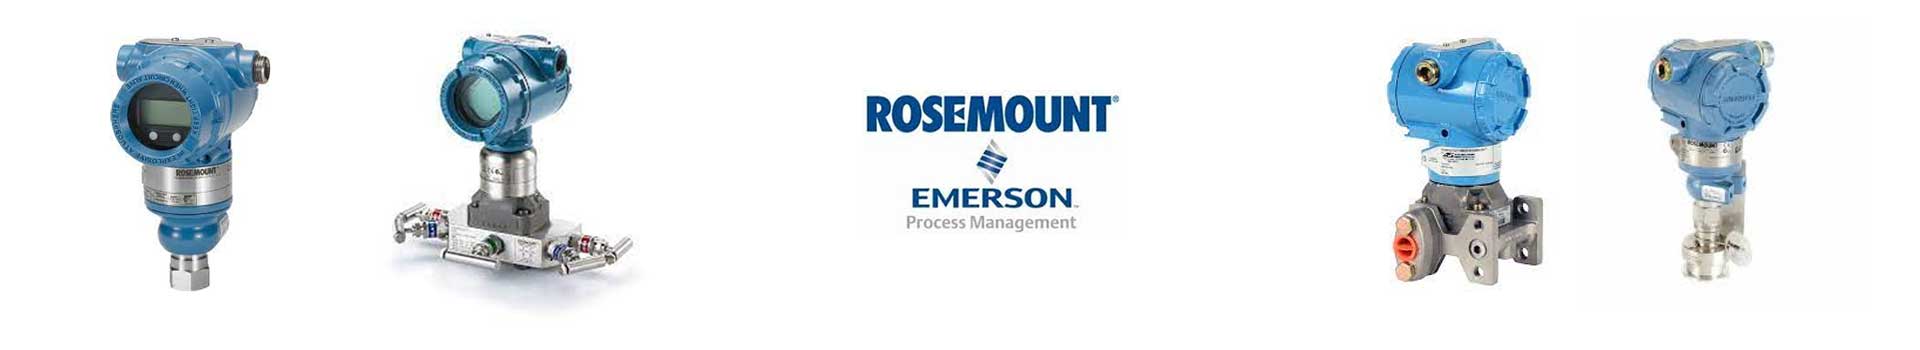 罗斯蒙特Rosemount流量变送器